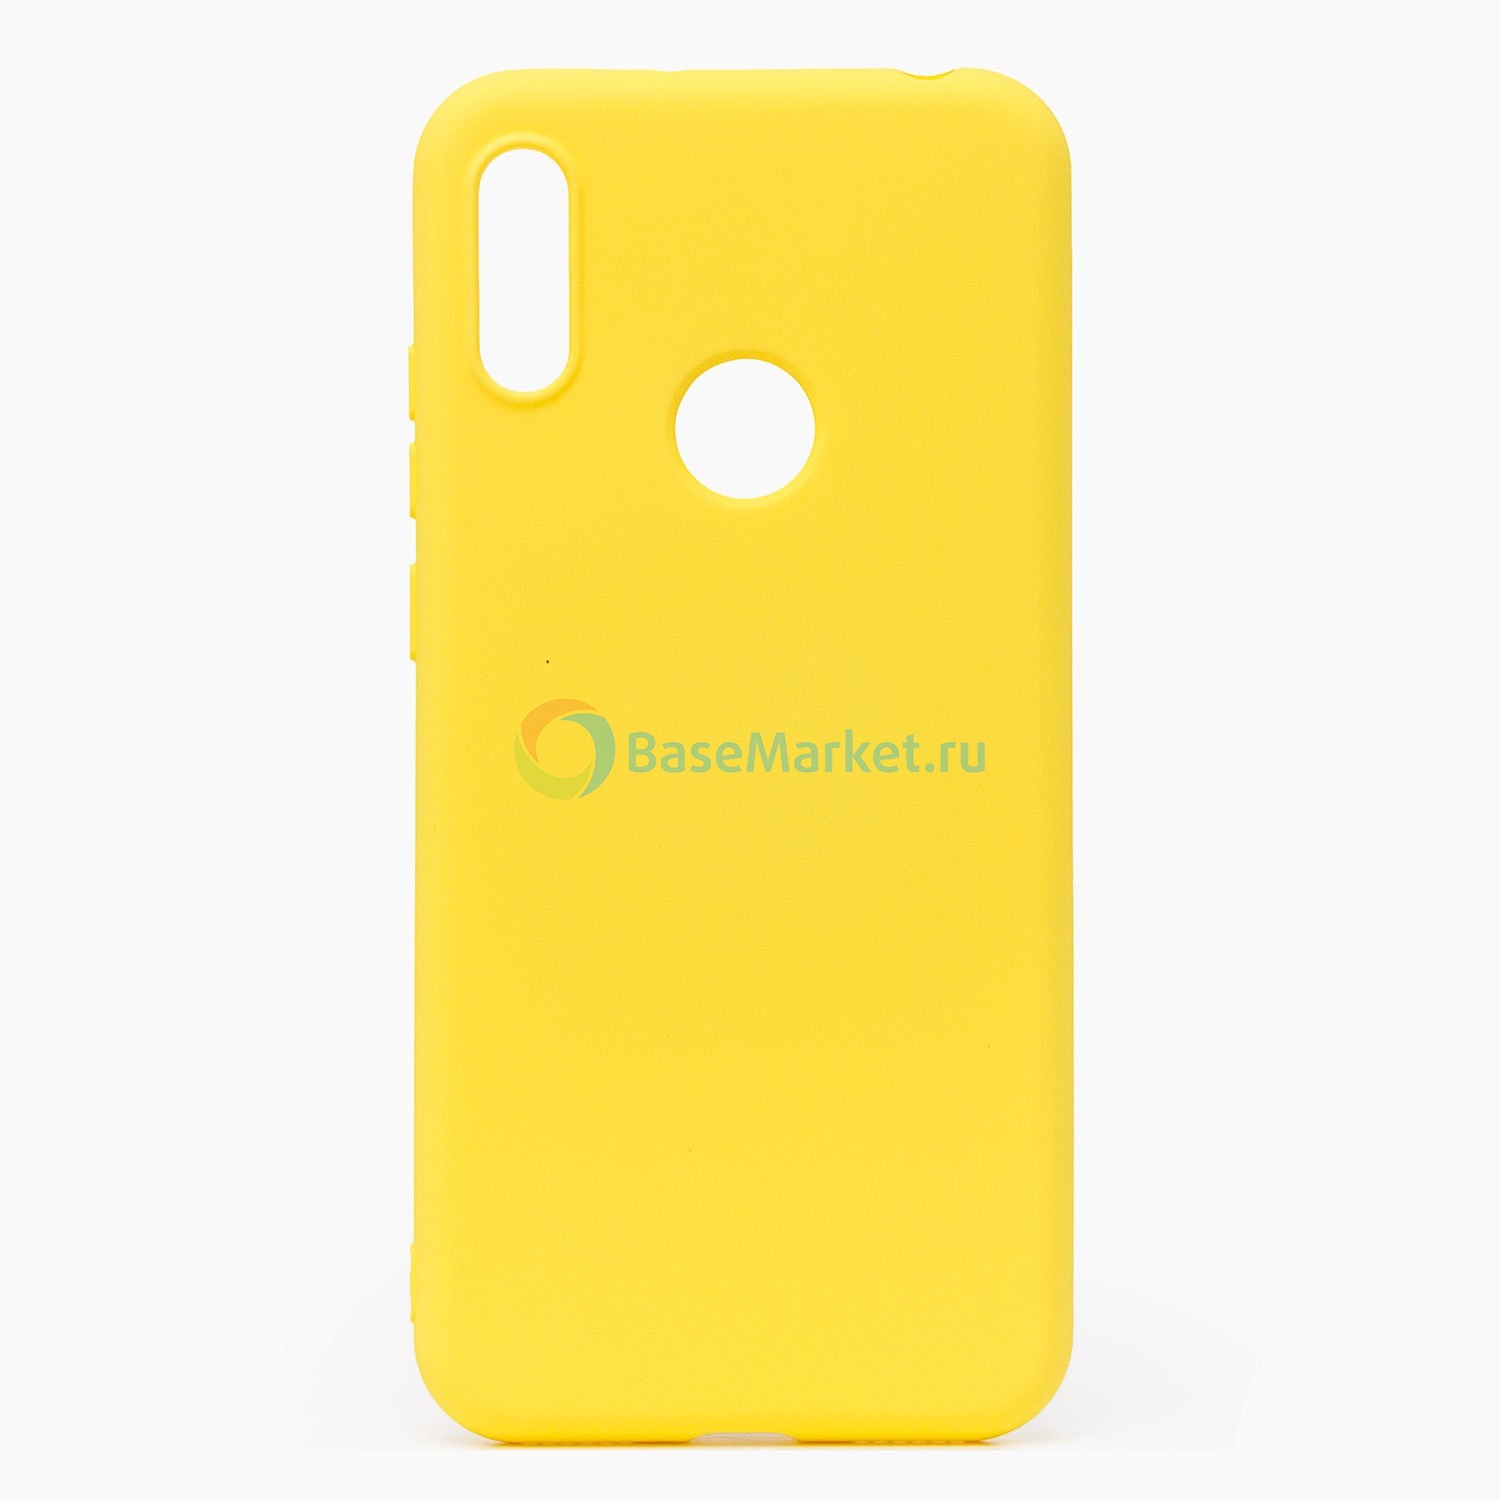 Чехол накладка Activ Full Original Design BaseMarket для Huawei Y6 Pro (2019) (желтый)